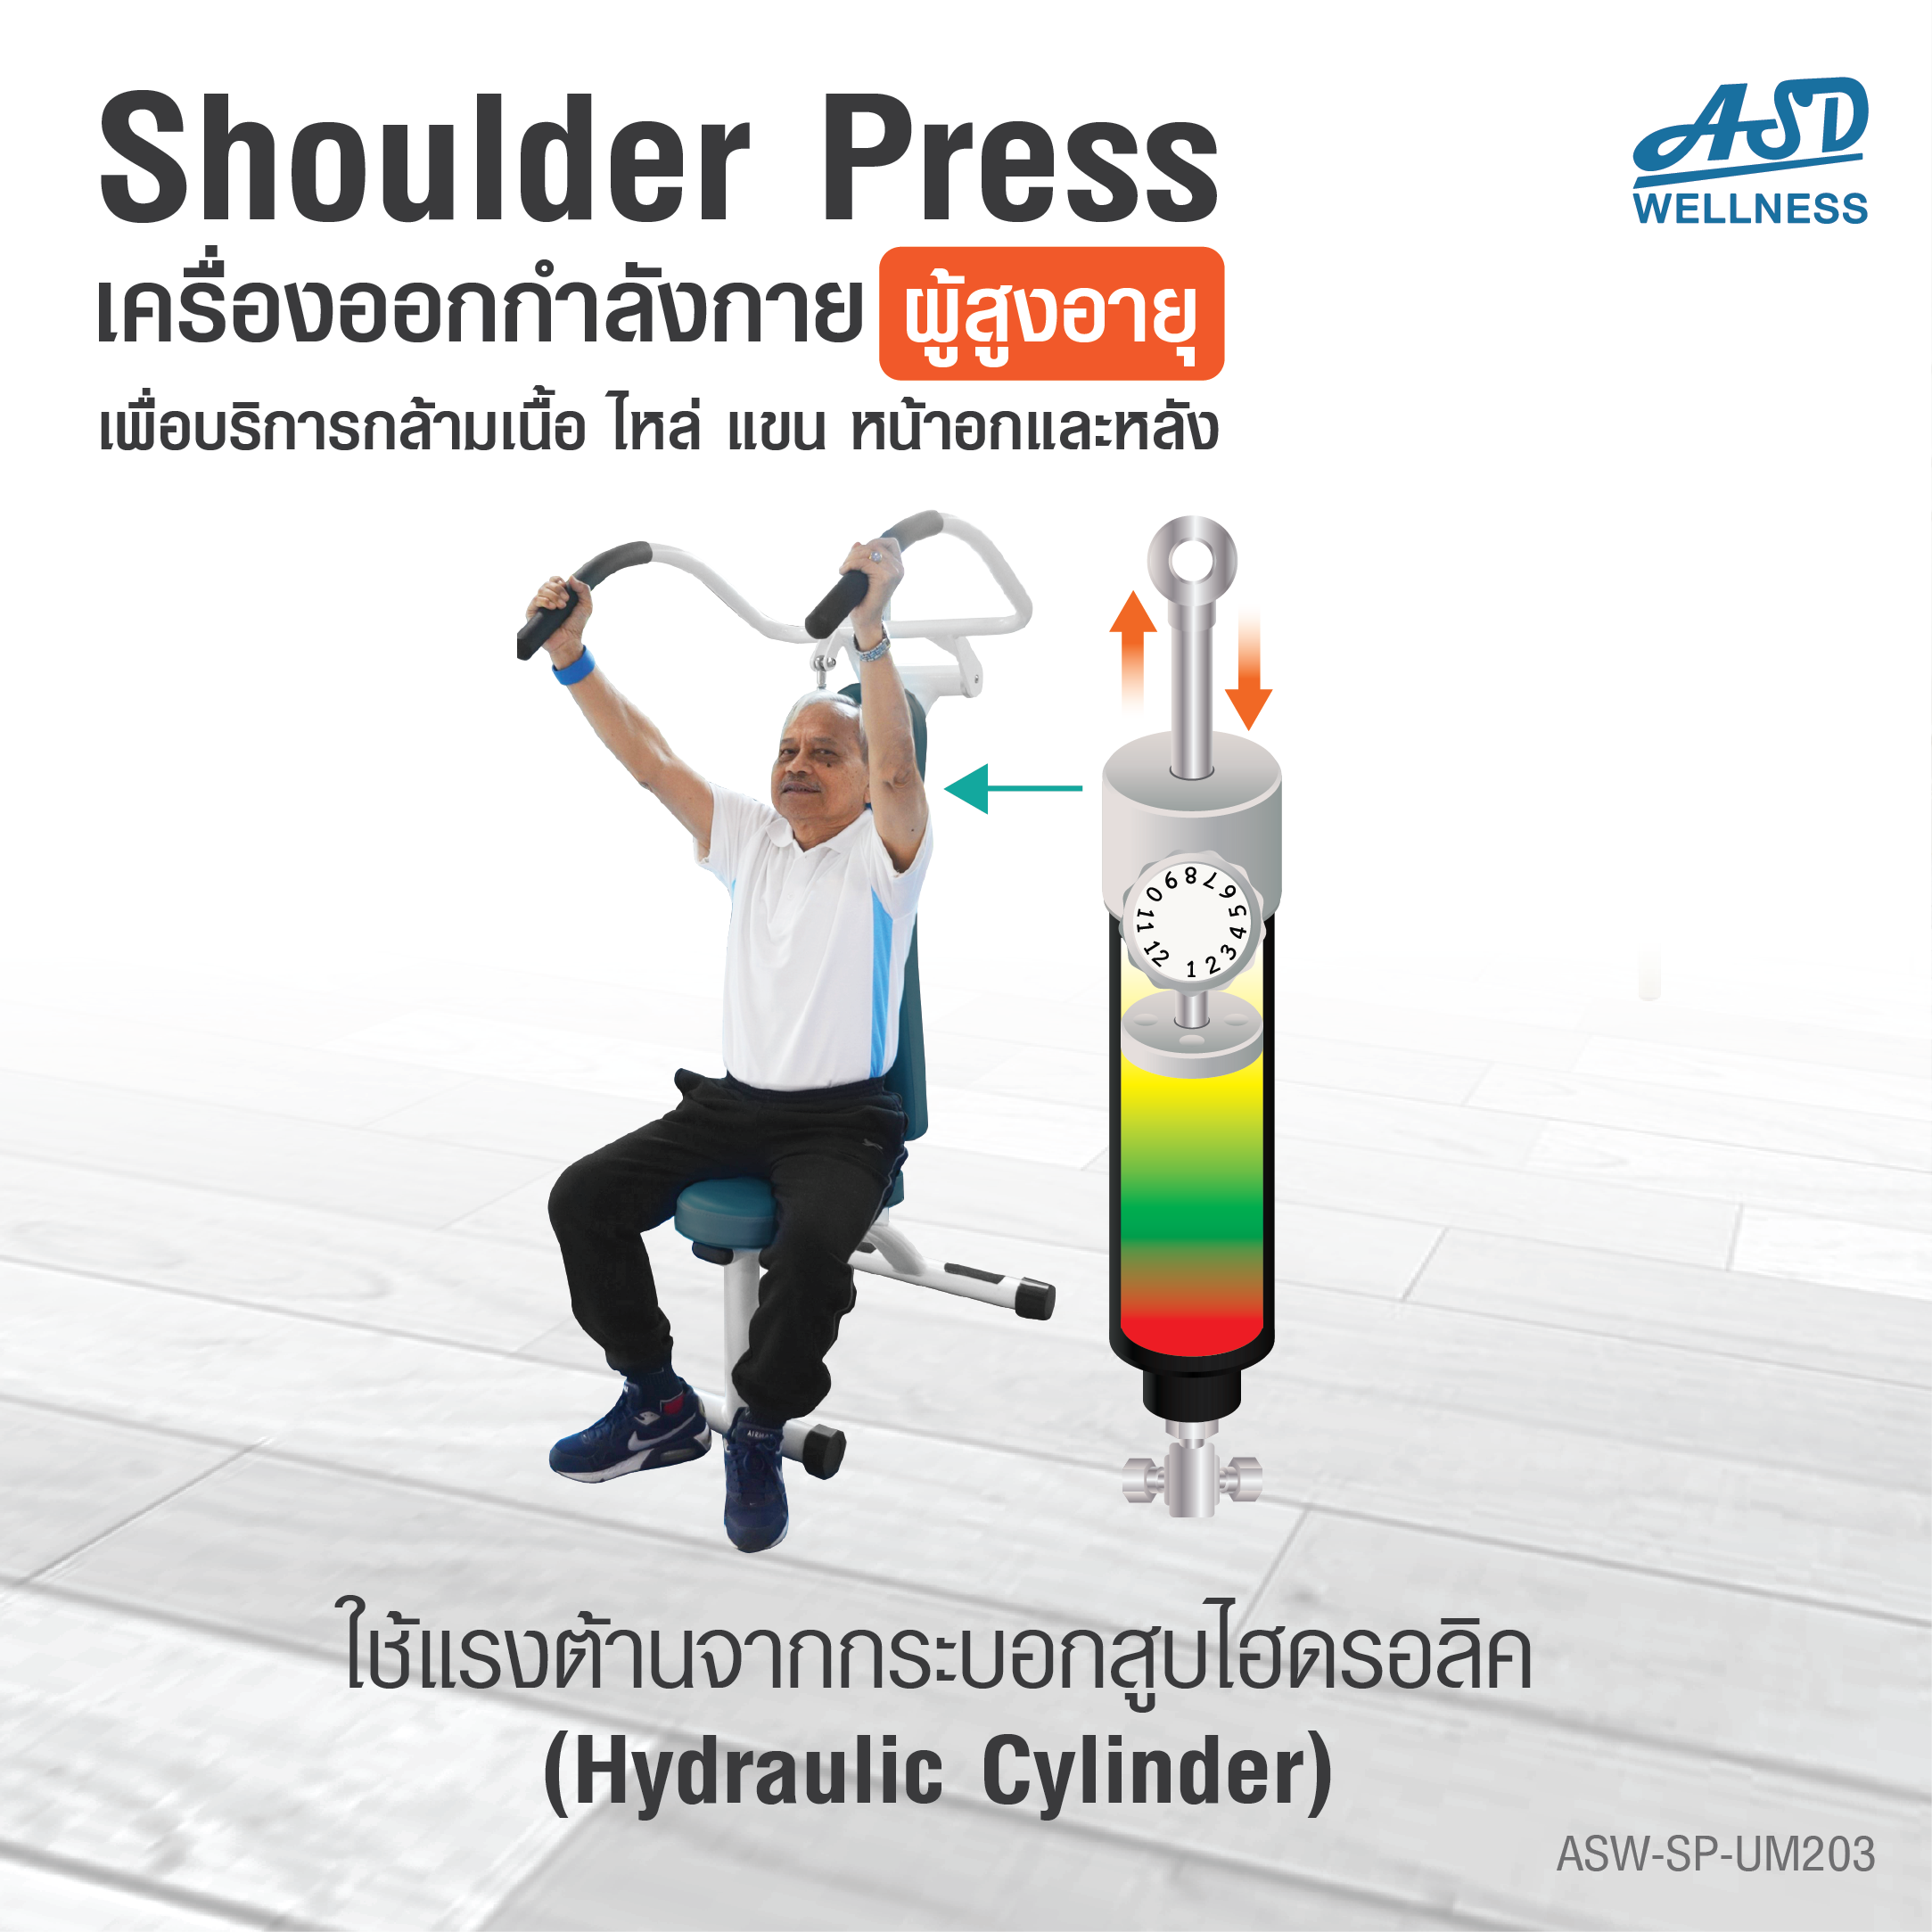 เครื่องออกกำลังกาย สำหรับผู้สูงอายุ เพื่อบริหารกล้ามเนื้อไหล่ แขน หน้าอกและหลัง Shoulder Press